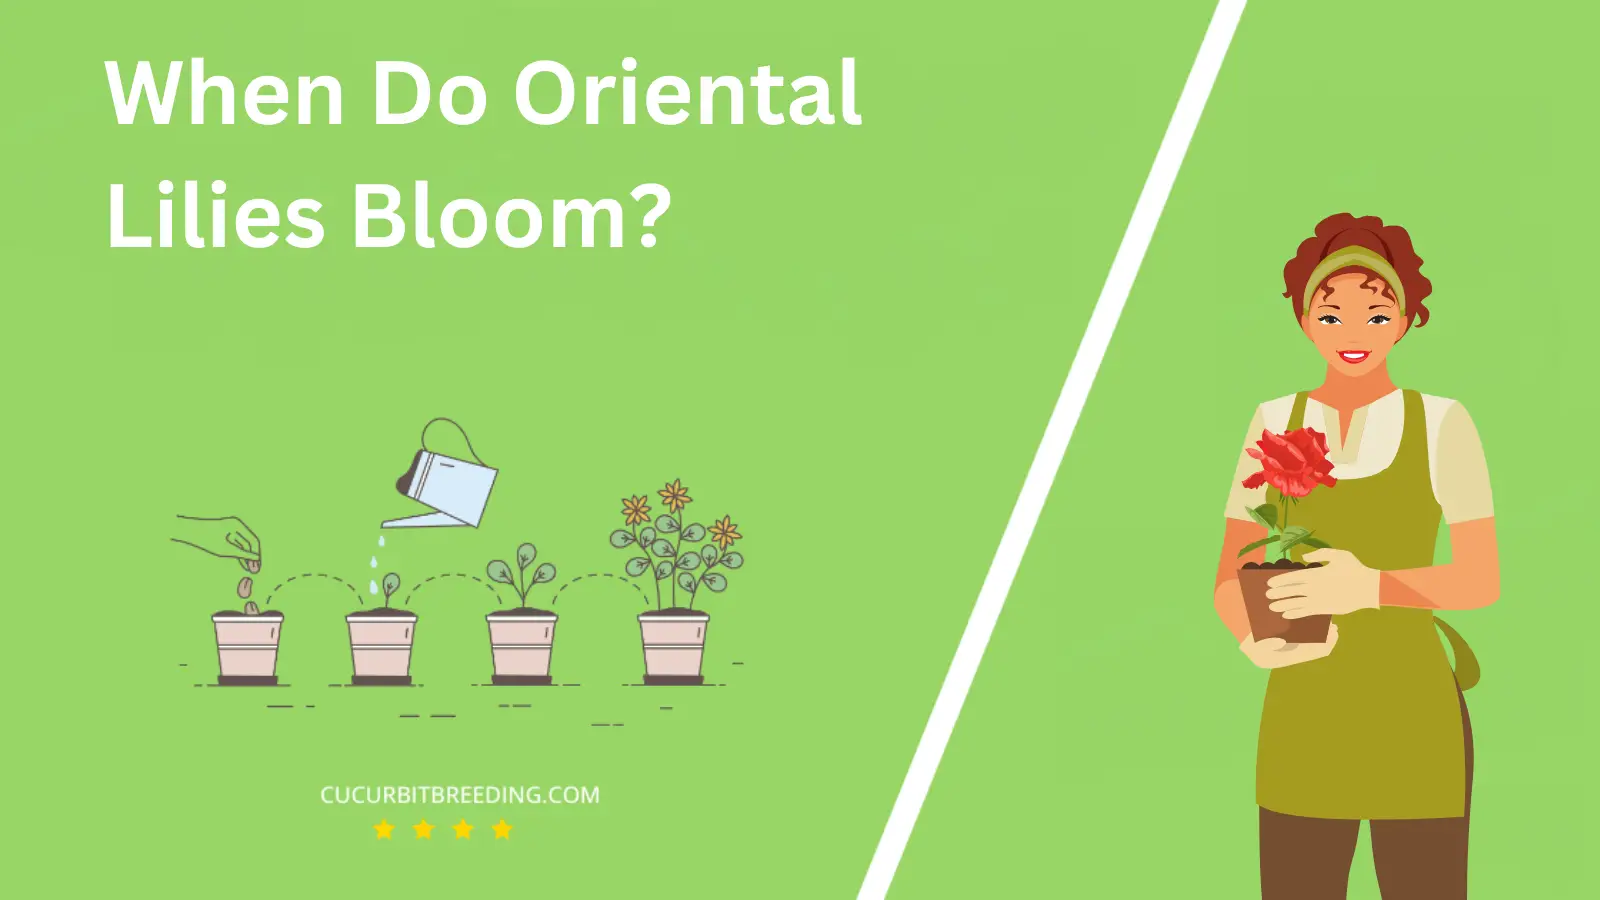 When Do Oriental Lilies Bloom?